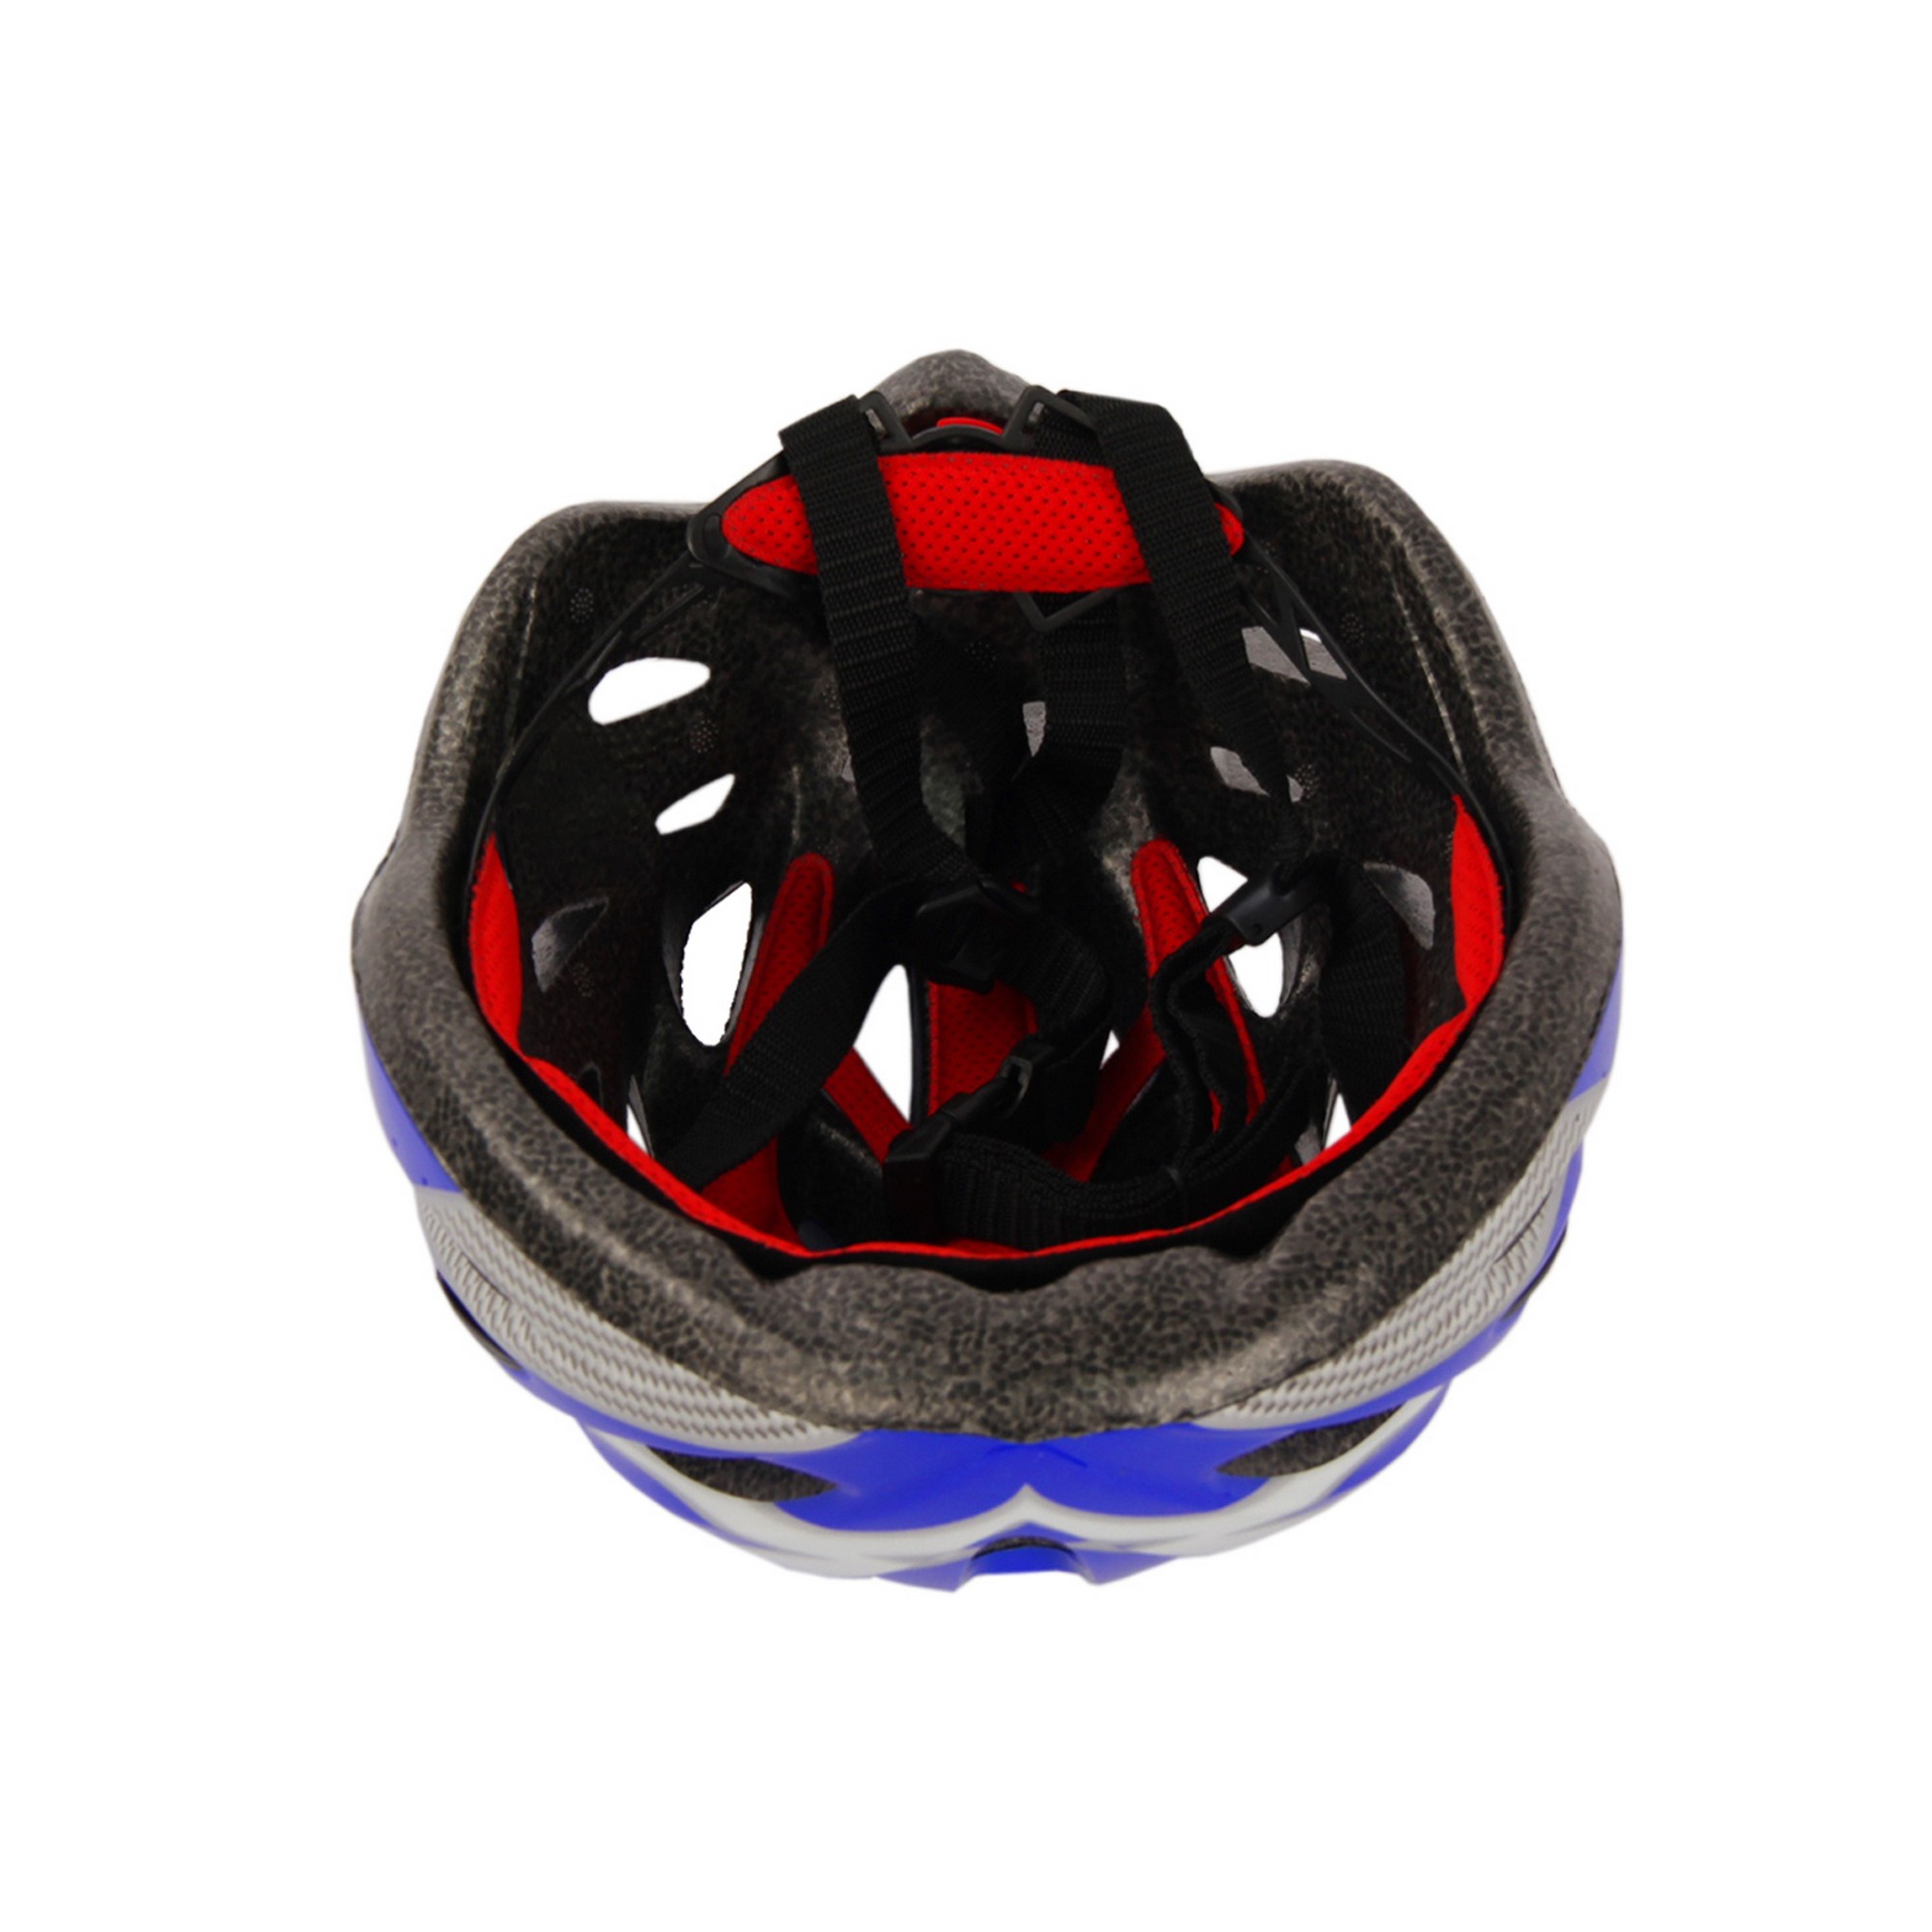 Шлем взрослый RGX с регулировкой размера 55-60 WX-H03 синий 2000_2000